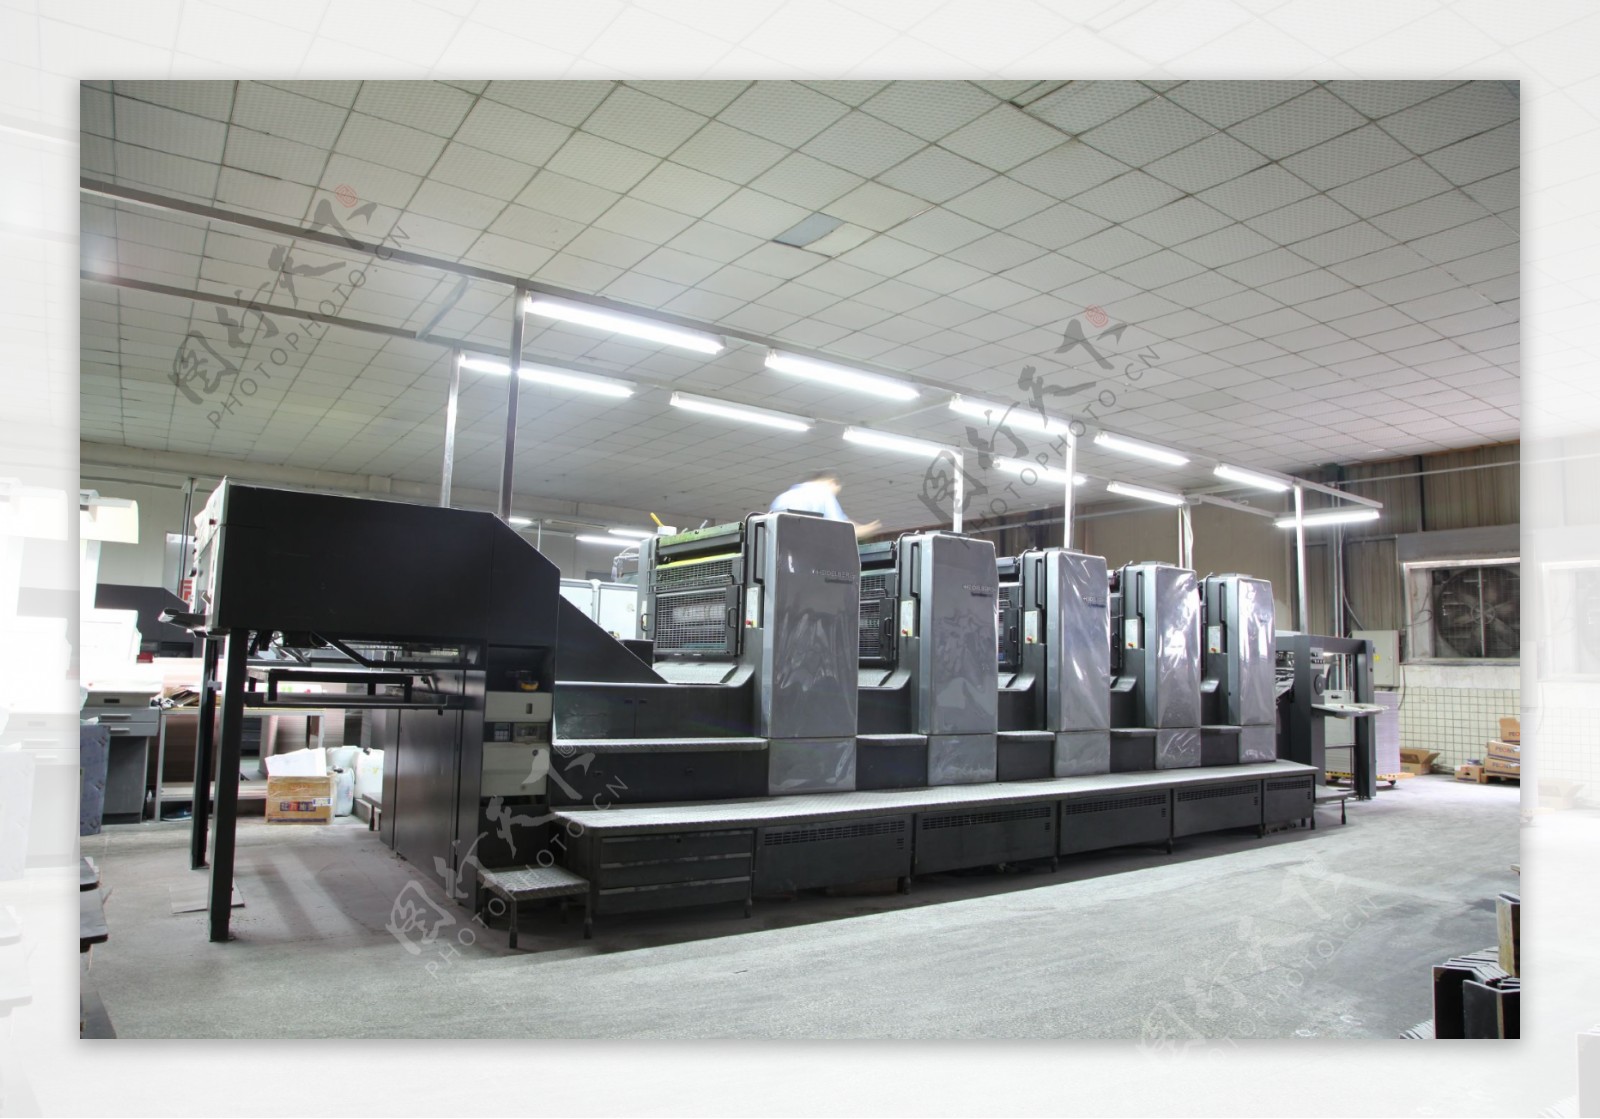 印刷设备素材之五色印刷机